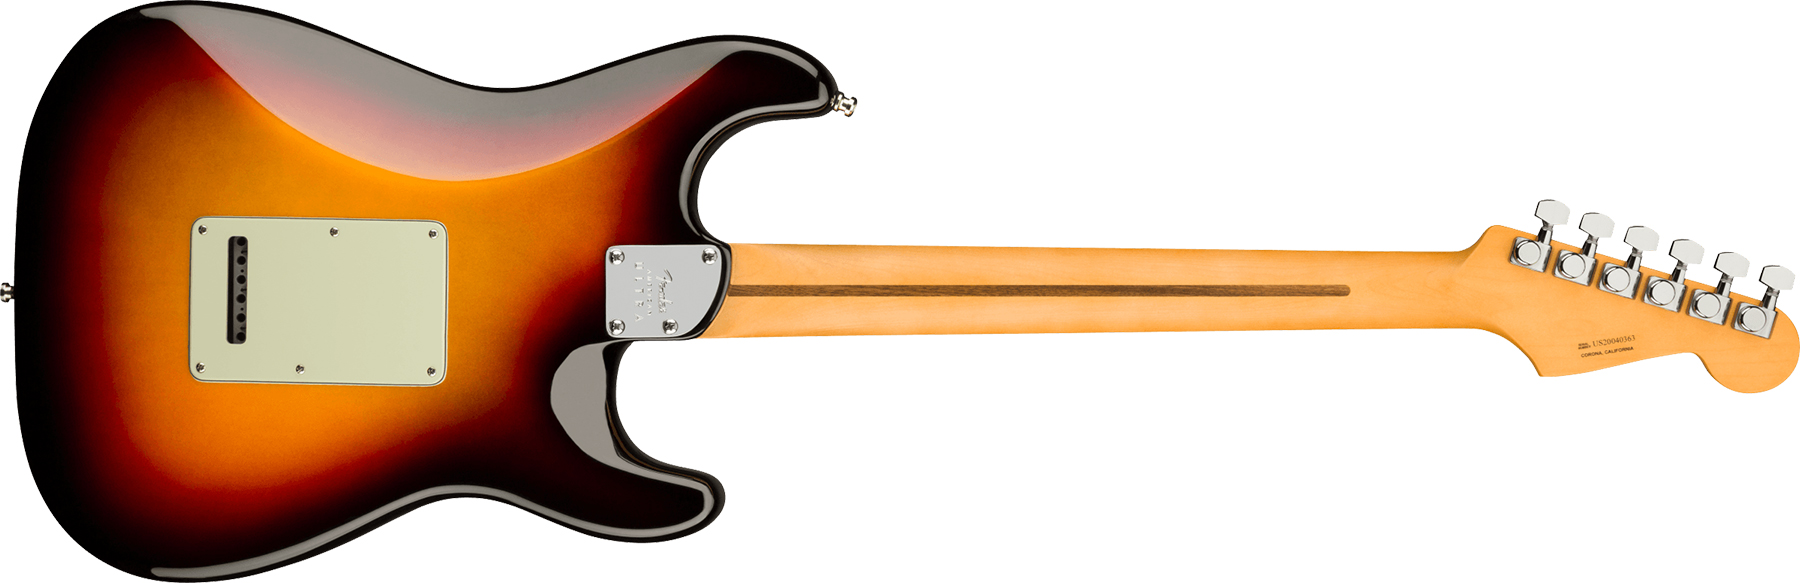 Fender Strat American Ultra Lh Gaucher Usa Rw +etui - Ultraburst - Linkshandige elektrische gitaar - Variation 1